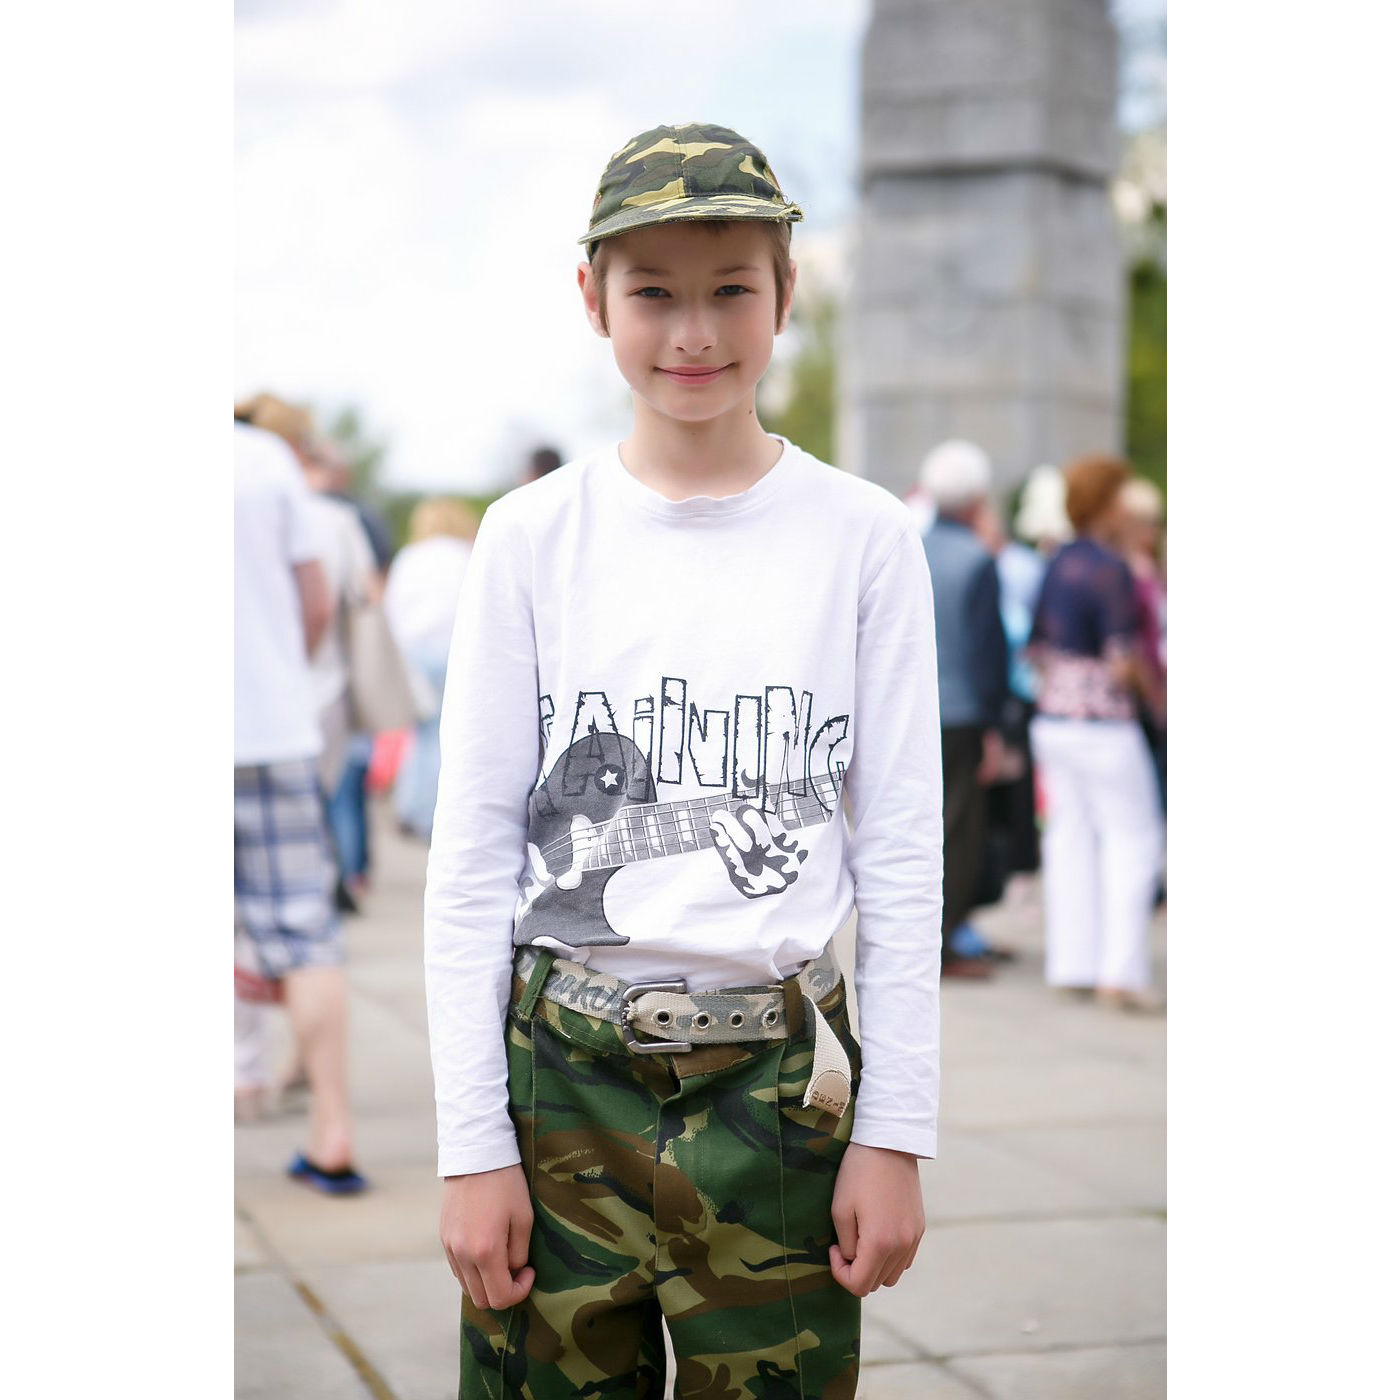 Миша Джигайло, 10 лет:- Я из Новосибирска, первый раз на параде в Калининграде. Чем отличается День Победы в Новосибирске? Там можно посмотреть на парад, тут - нет. Людей меньше. 